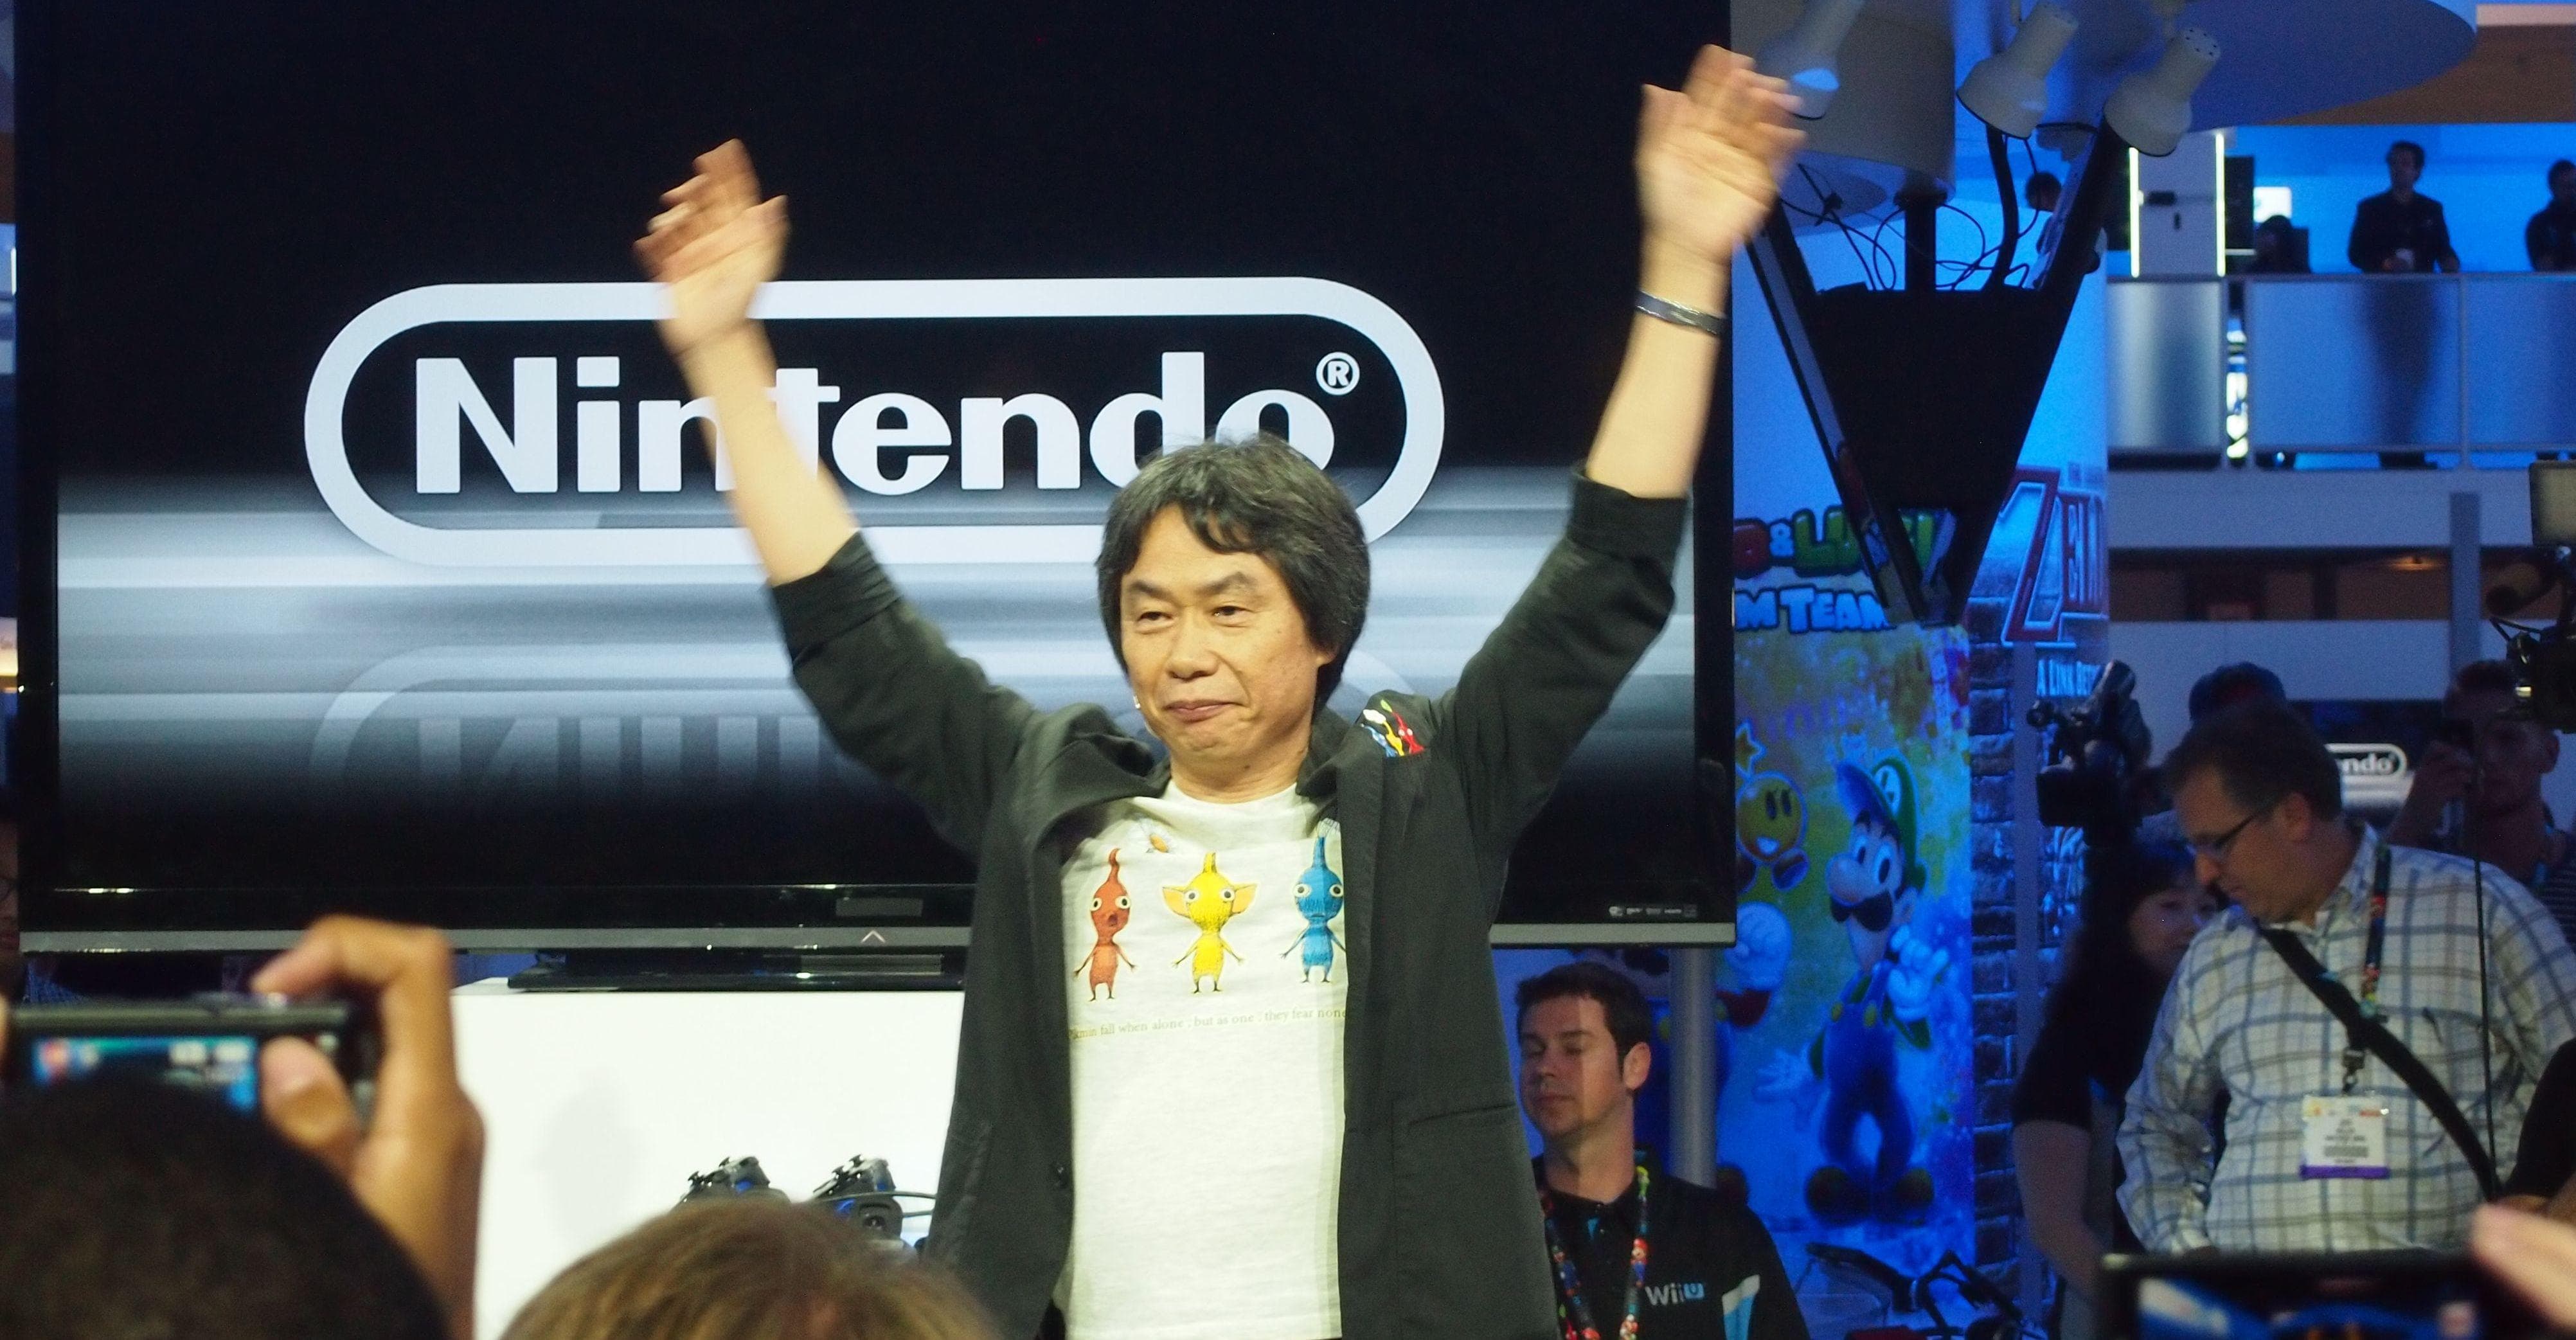 Shigeru Miyamoto Facts for Kids